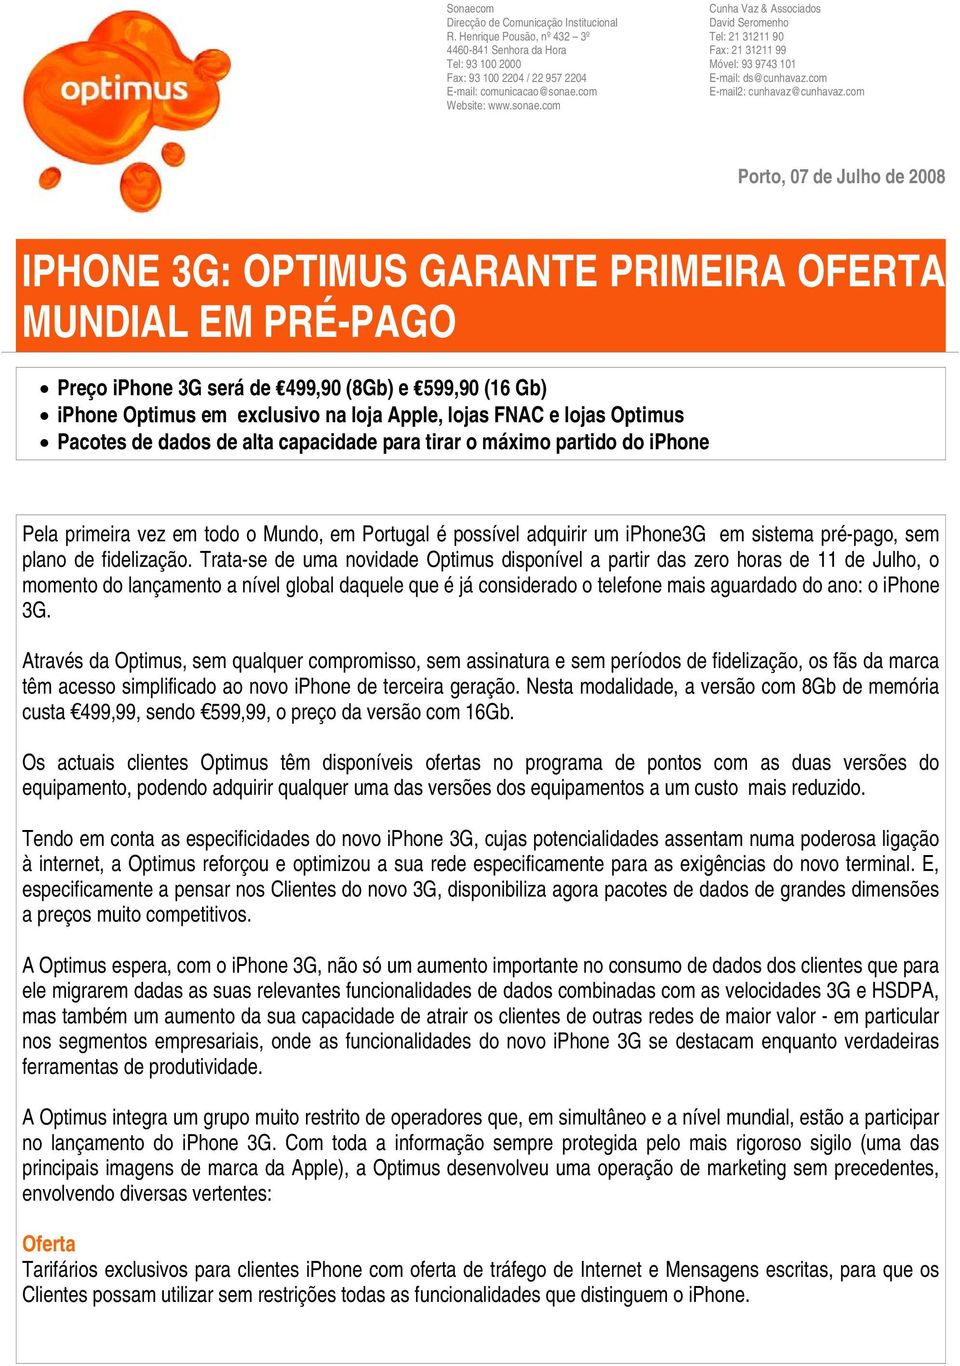 com Porto, 07 de Julho de 2008 IPHONE 3G: OPTIMUS GARANTE PRIMEIRA OFERTA MUNDIAL EM PRÉ-PAGO Preço iphone 3G será de 499,90 (8Gb) e 599,90 (16 Gb) iphone Optimus em exclusivo na loja Apple, lojas